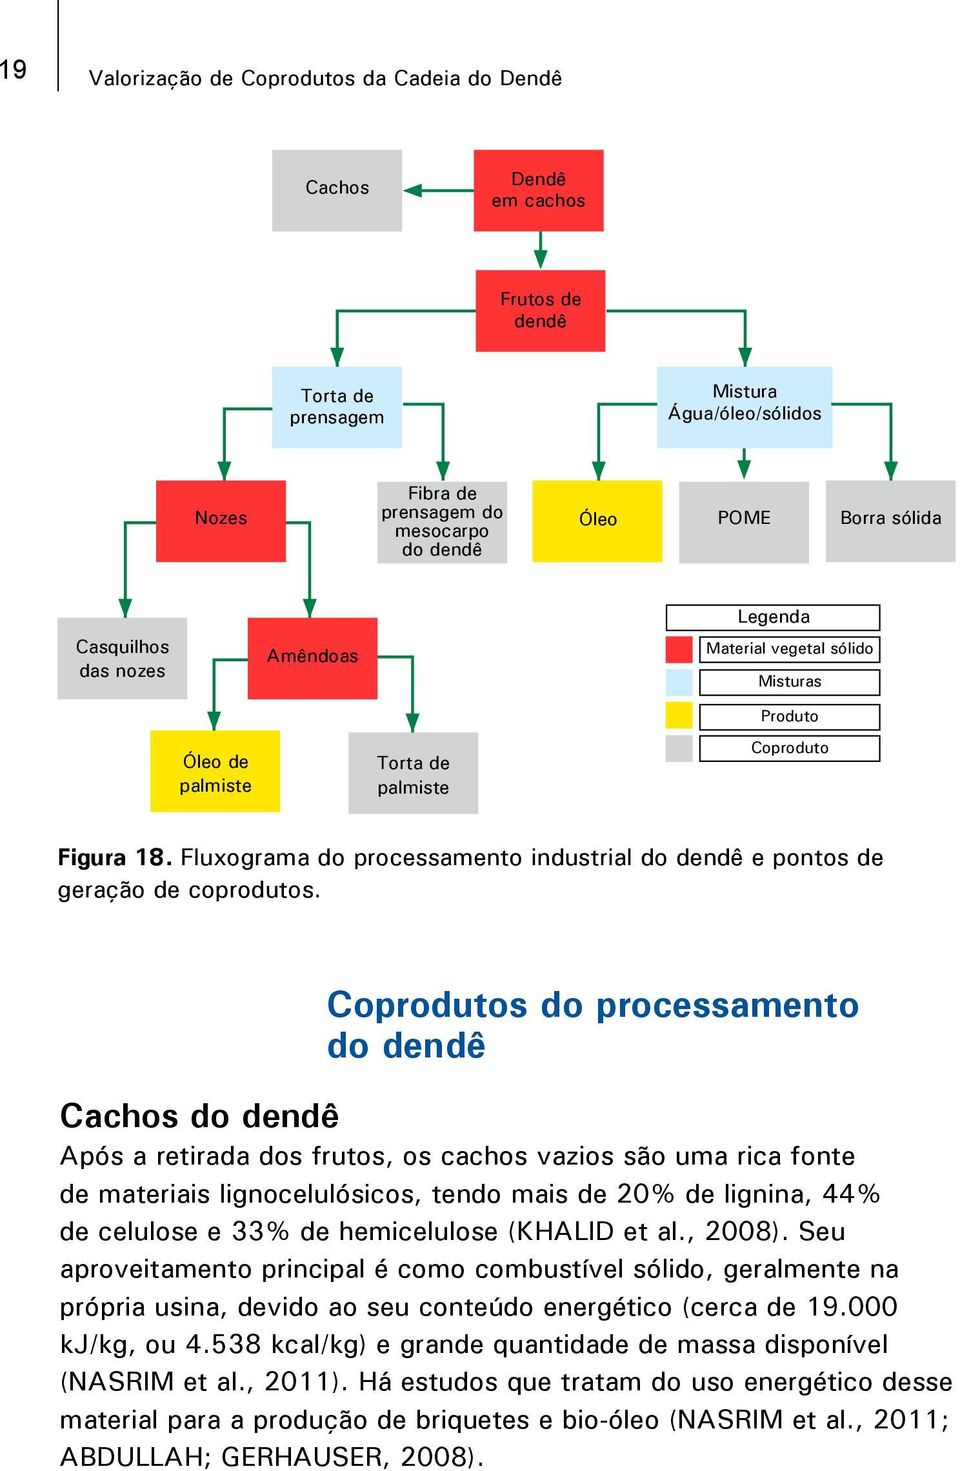 Fluxograma do processamento industrial do dendê e pontos de geração de coprodutos.